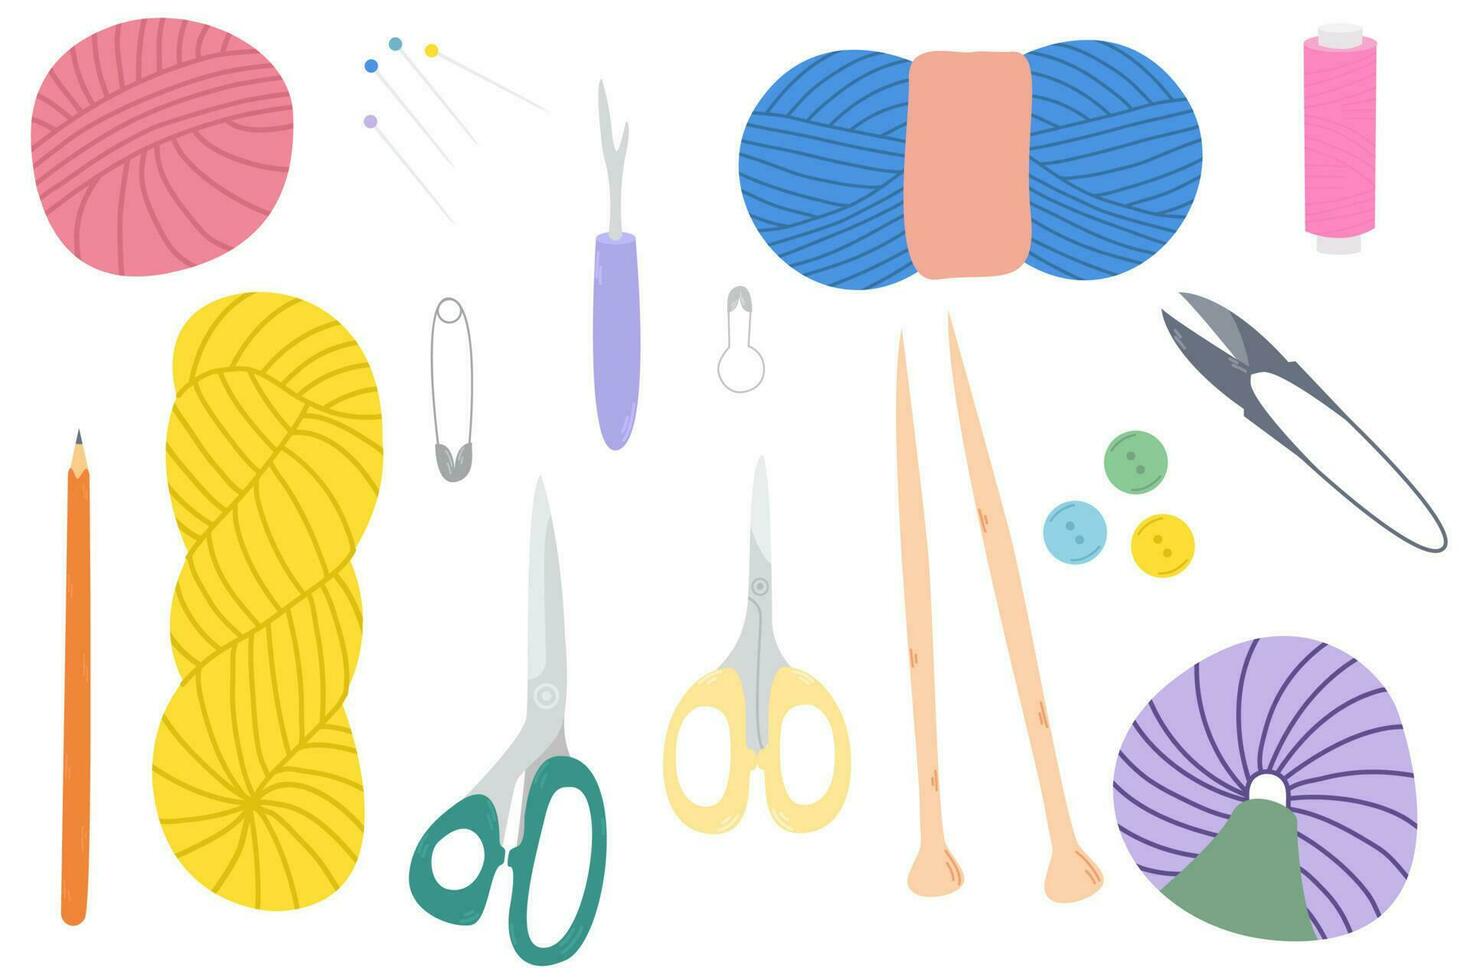 conjunto de costura de coser herramientas. accesorios a tejer y coser colección con tejido de punto agujas tijeras, hilo, pelota de lana, agujas, botones. vector